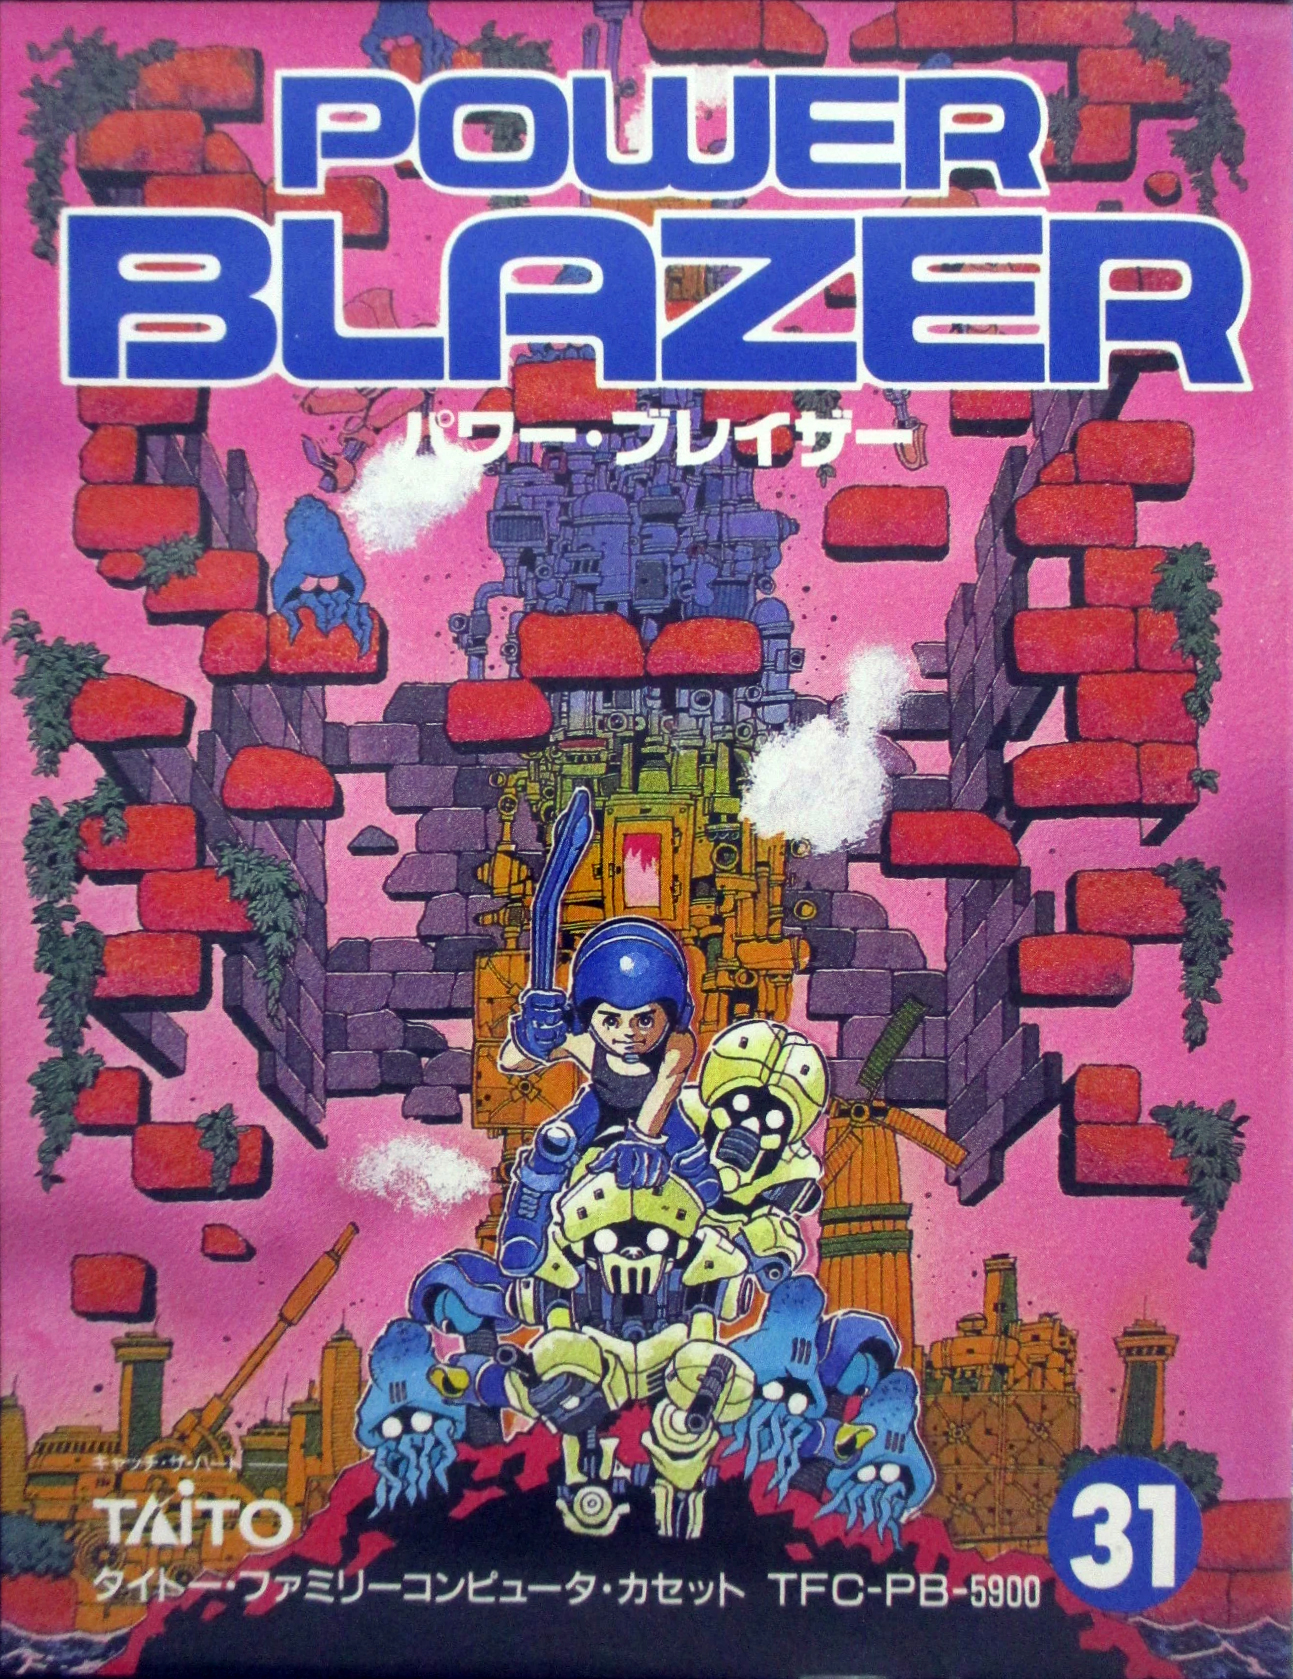 Power Blazer